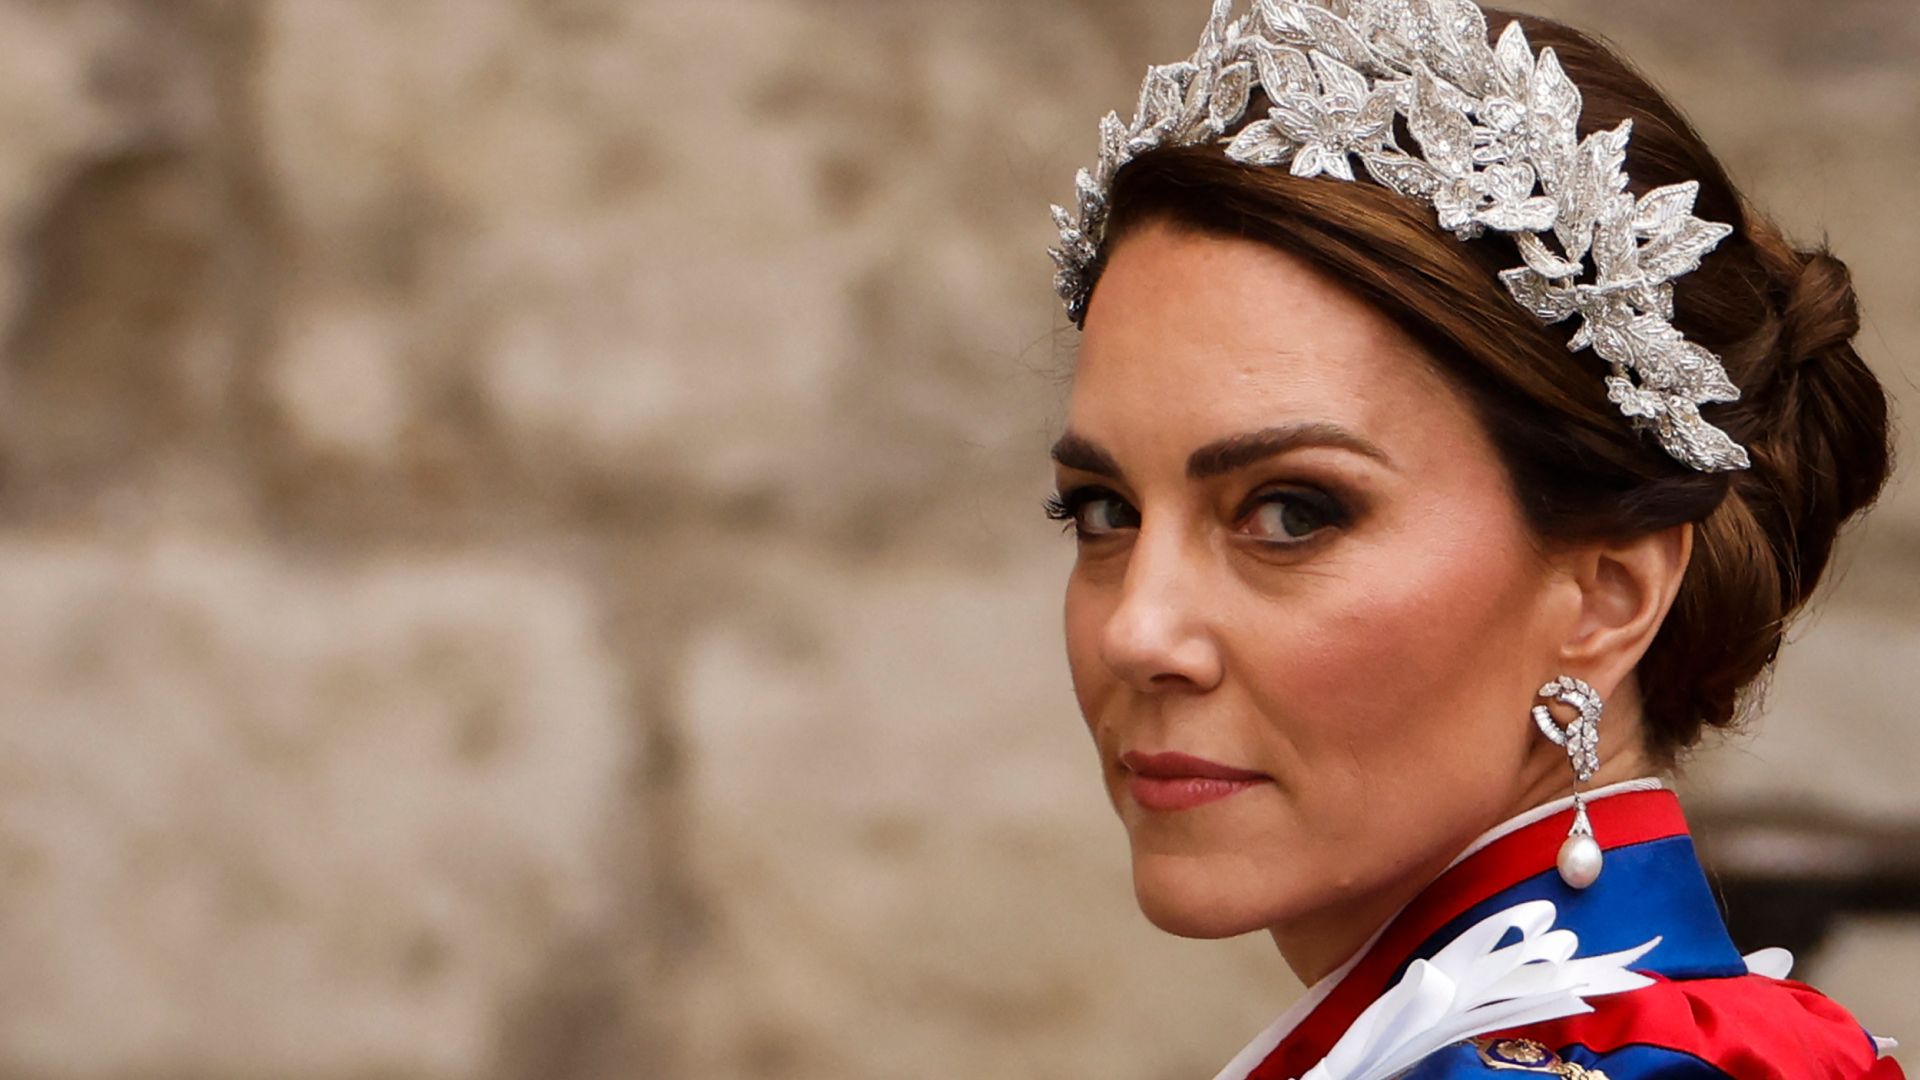 Kate Middleton Wore Special Tiara to Jordan Royal Wedding